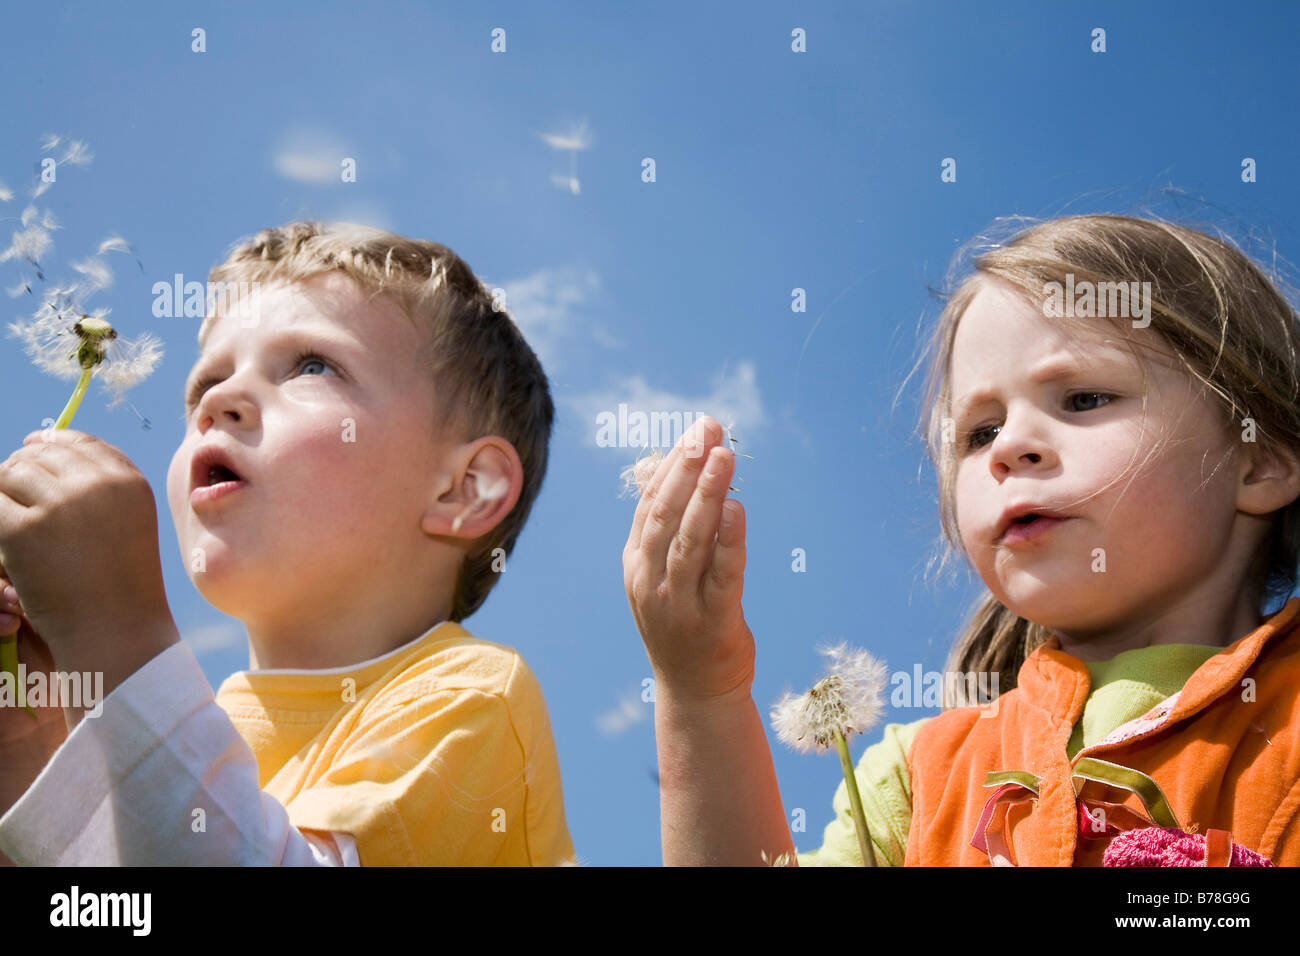 Garçon, 3 ans, et fille, 4 ans, blowballs soufflage, graines de pissenlit (Taraxacum officinale), Suisse, Europe Banque D'Images